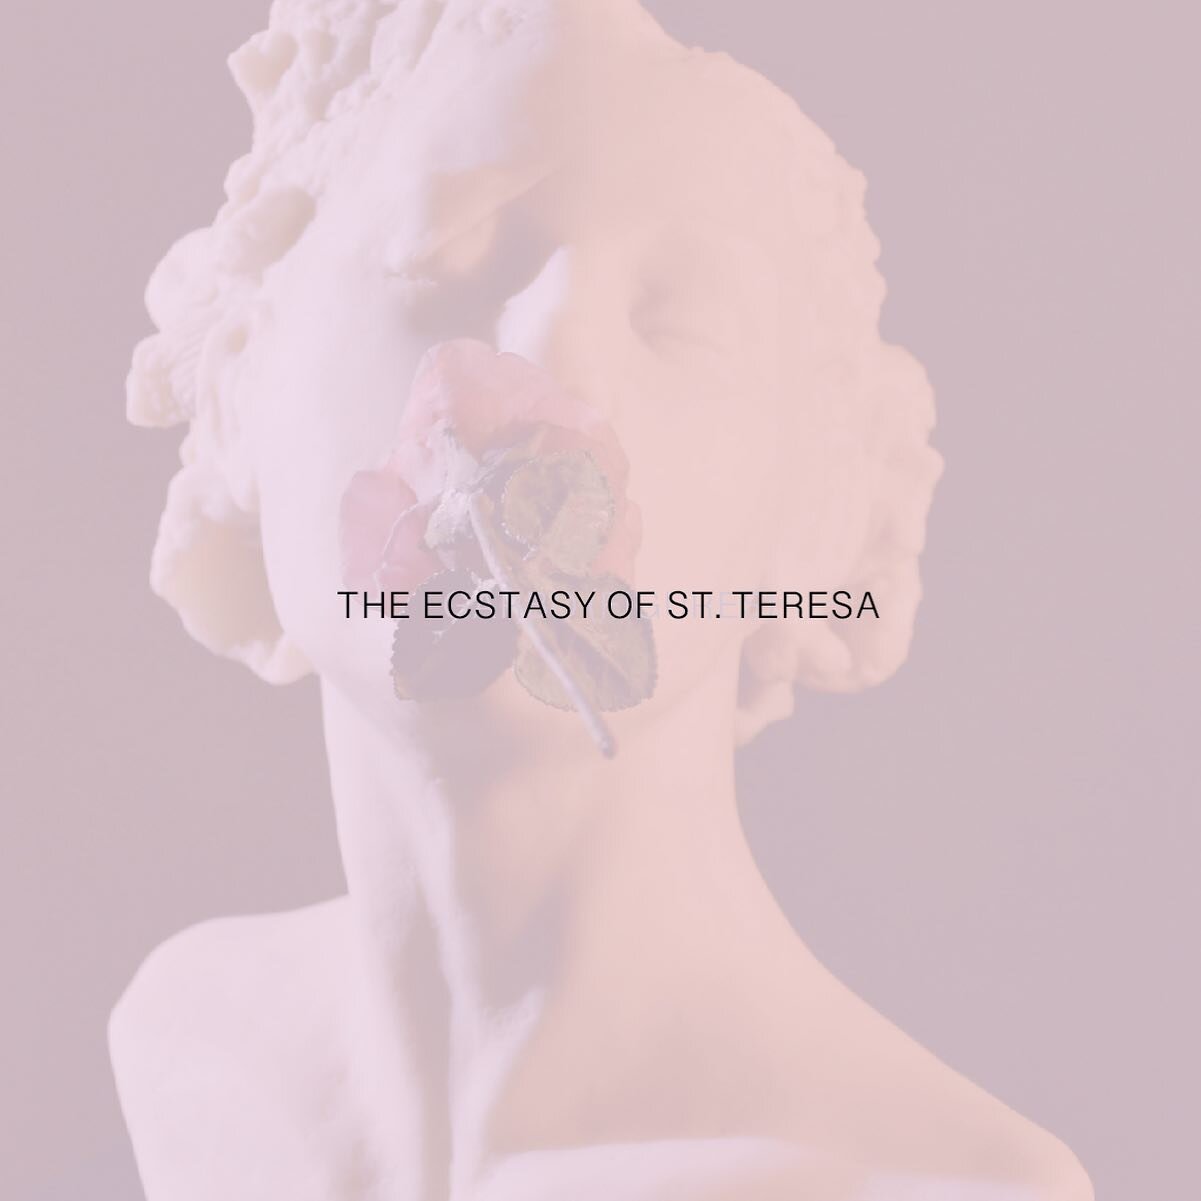 THE ECSTASY OF ST. TERESA